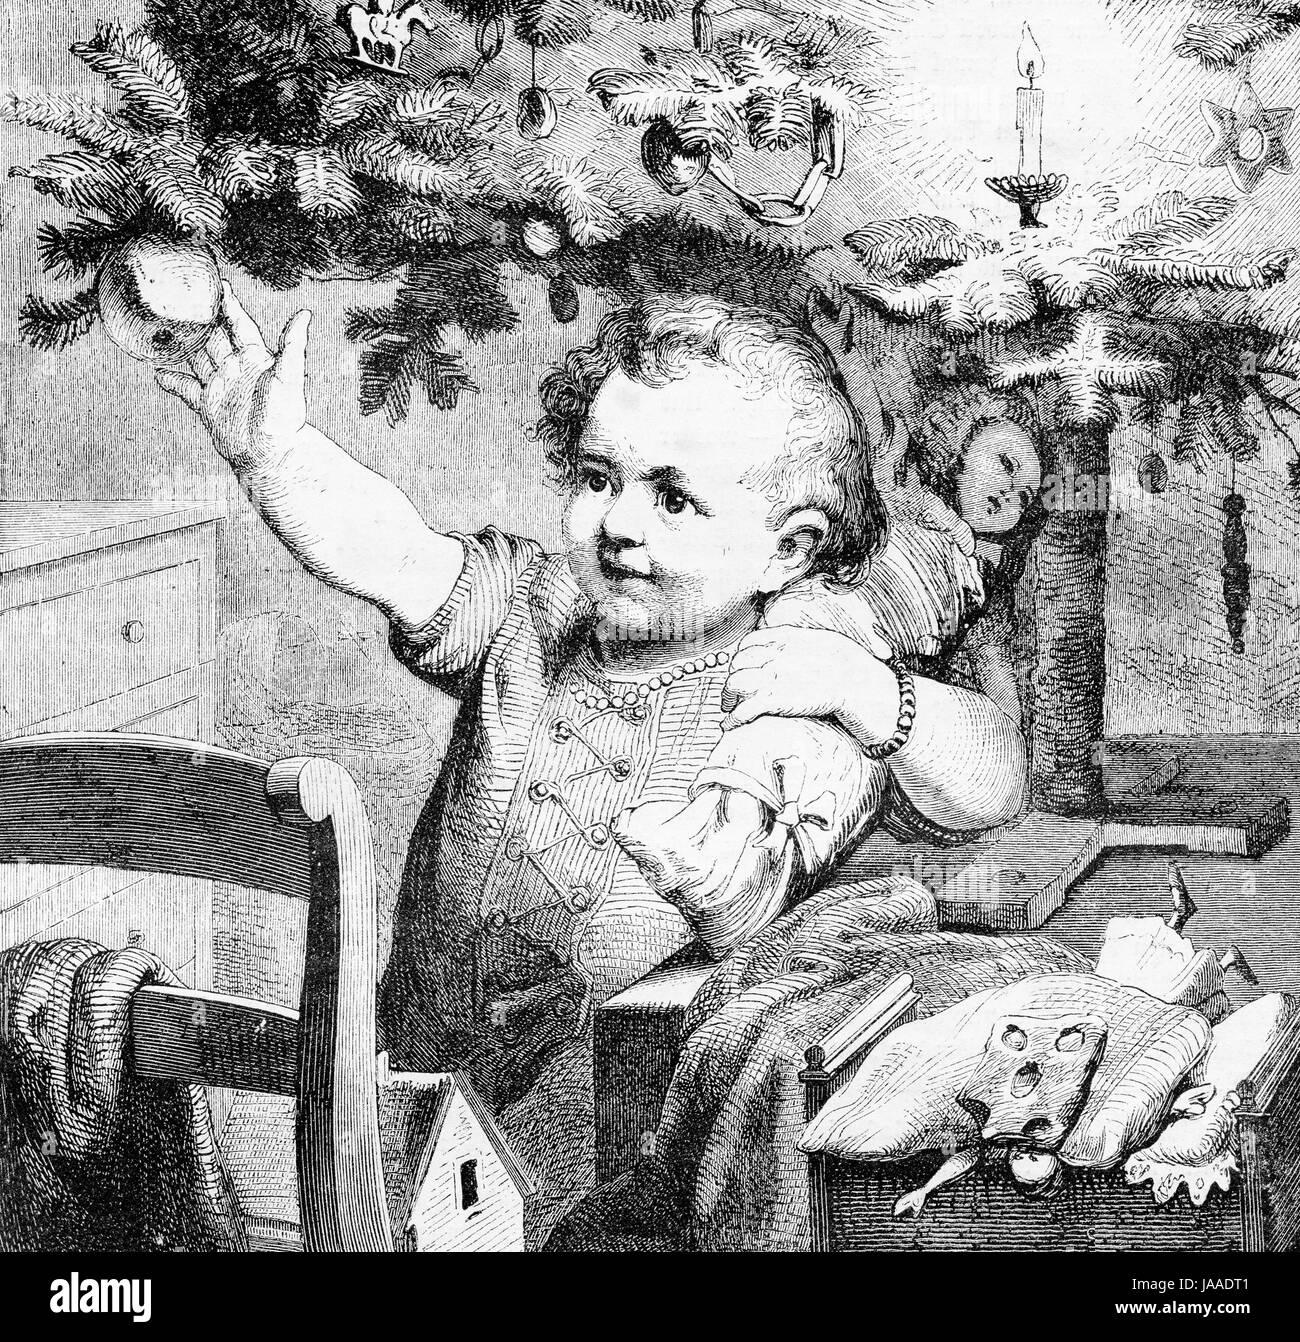 Bambino felice sotto l'albero di Natale - incisione dal XIX secolo Foto Stock